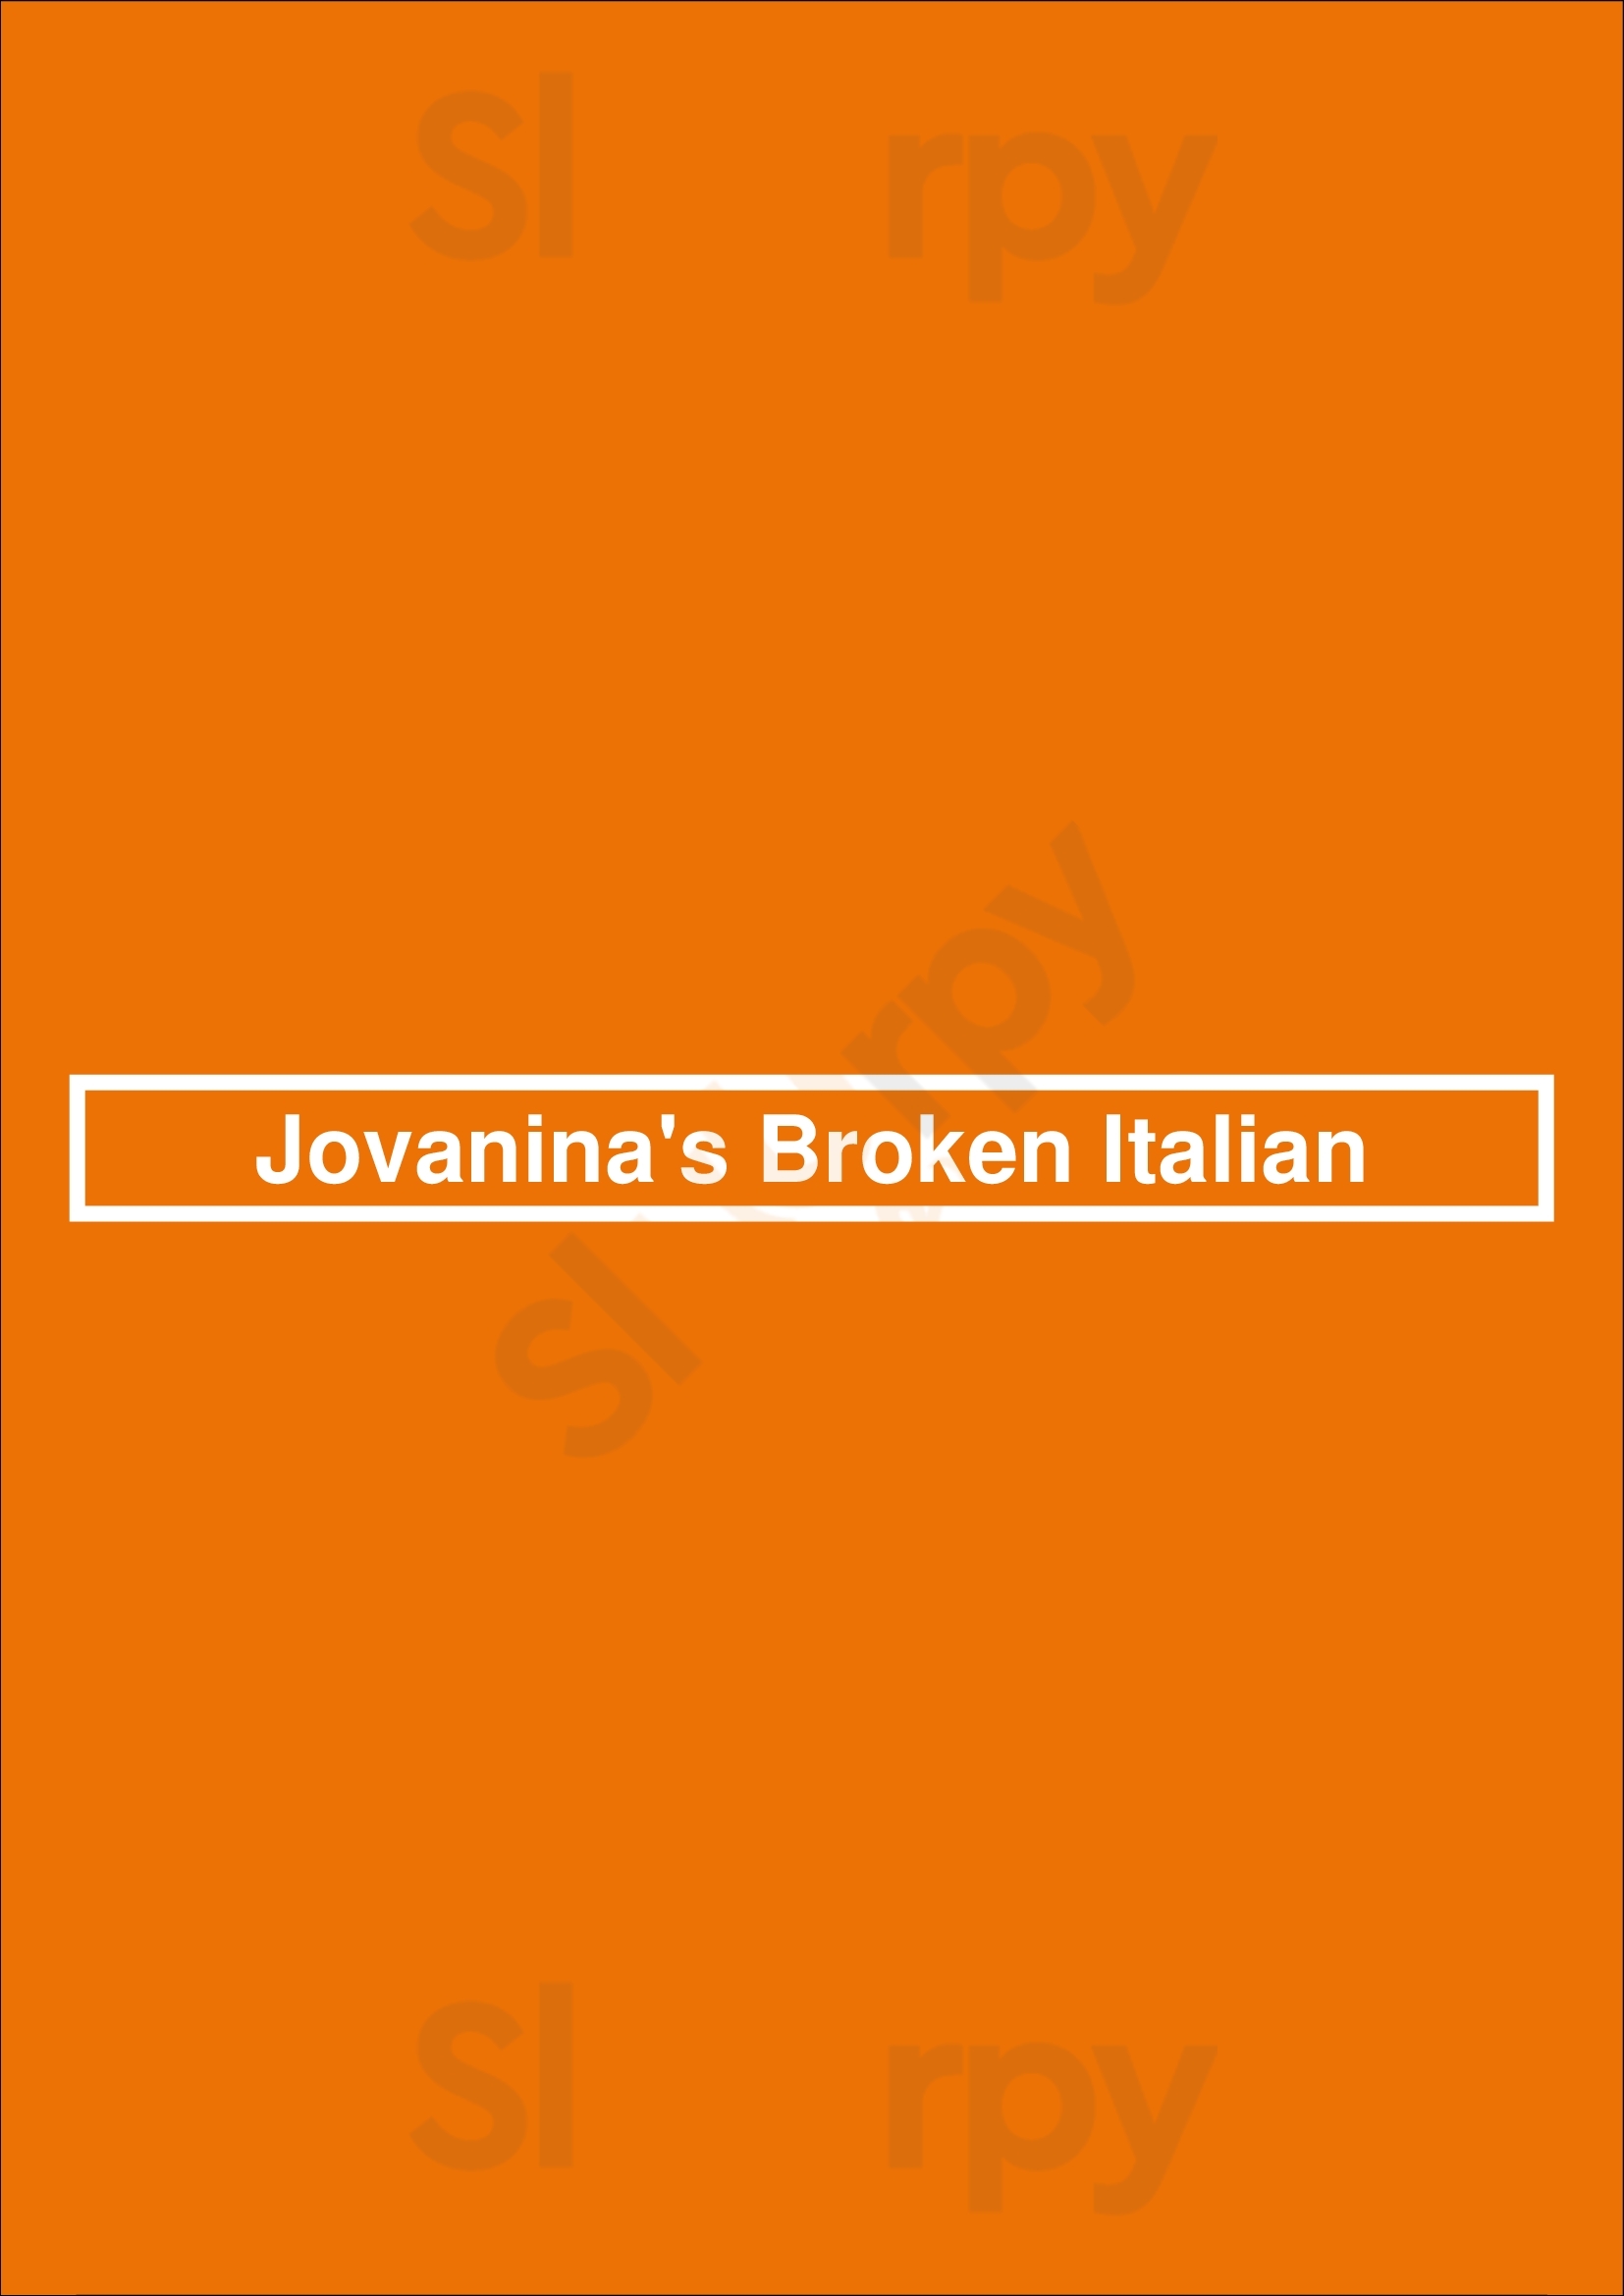 Jovanina's Broken Italian Denver Menu - 1